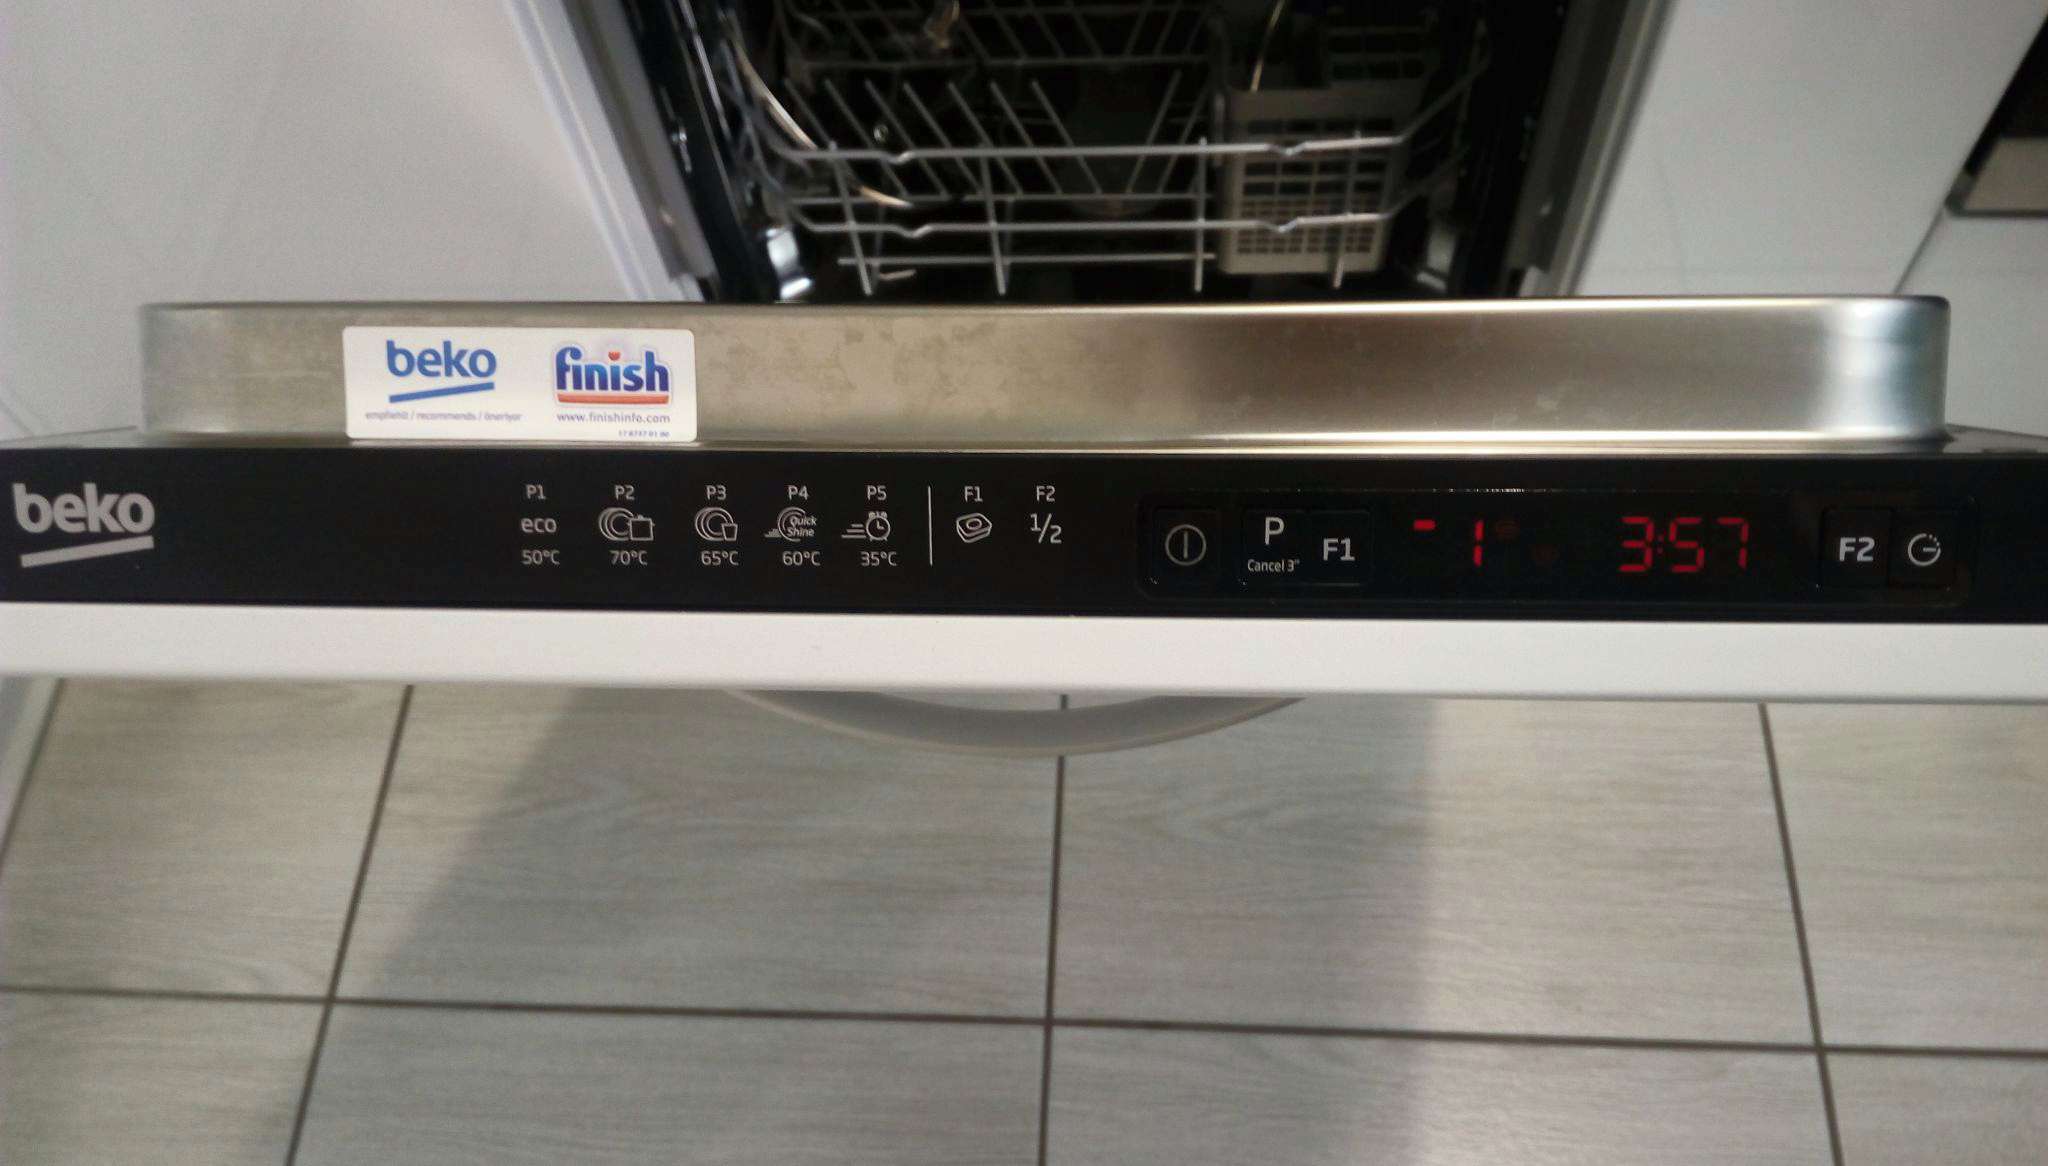 Снежинка на посудомойке. Встраиваемая посудомоечная машина Beko dis25010. БЕКО 25010 посудомоечная машина. Посудомойка Beko dis 25010. Посудомоечная машина Beko dis 25d12.